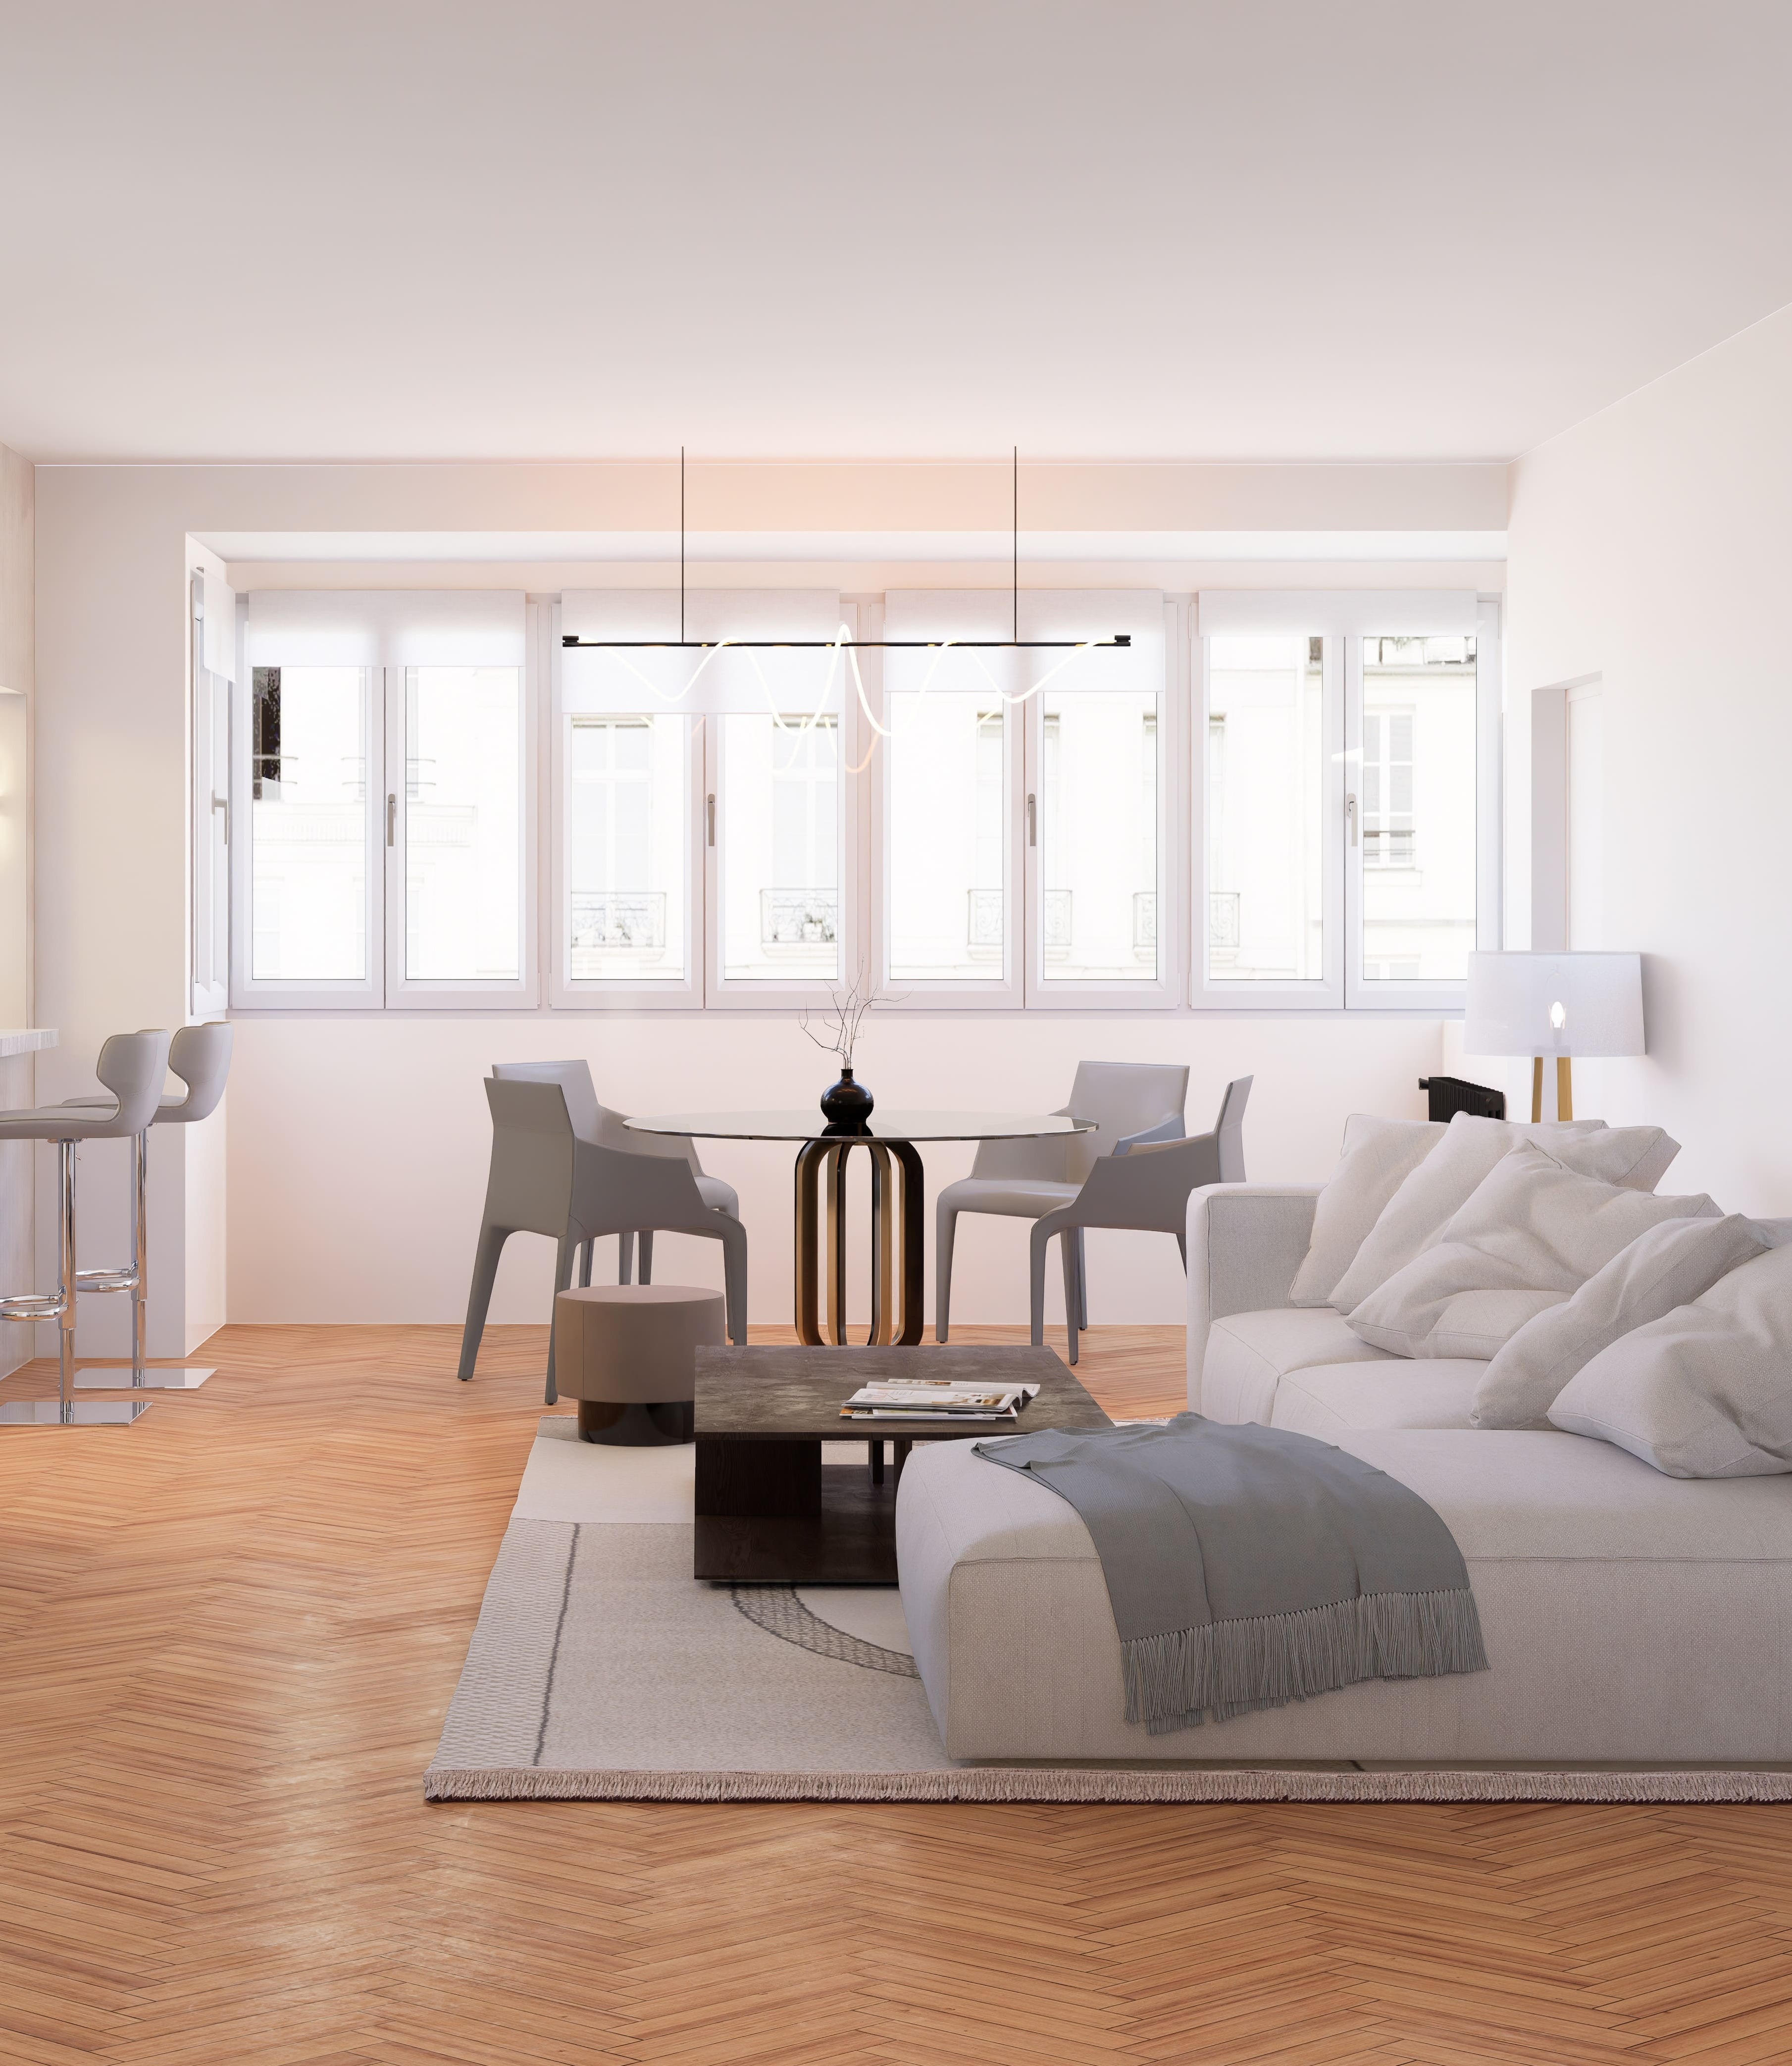 ab3d design - Projet d'appartement en partenariat avec THE AGENCY IMMO - Marseille